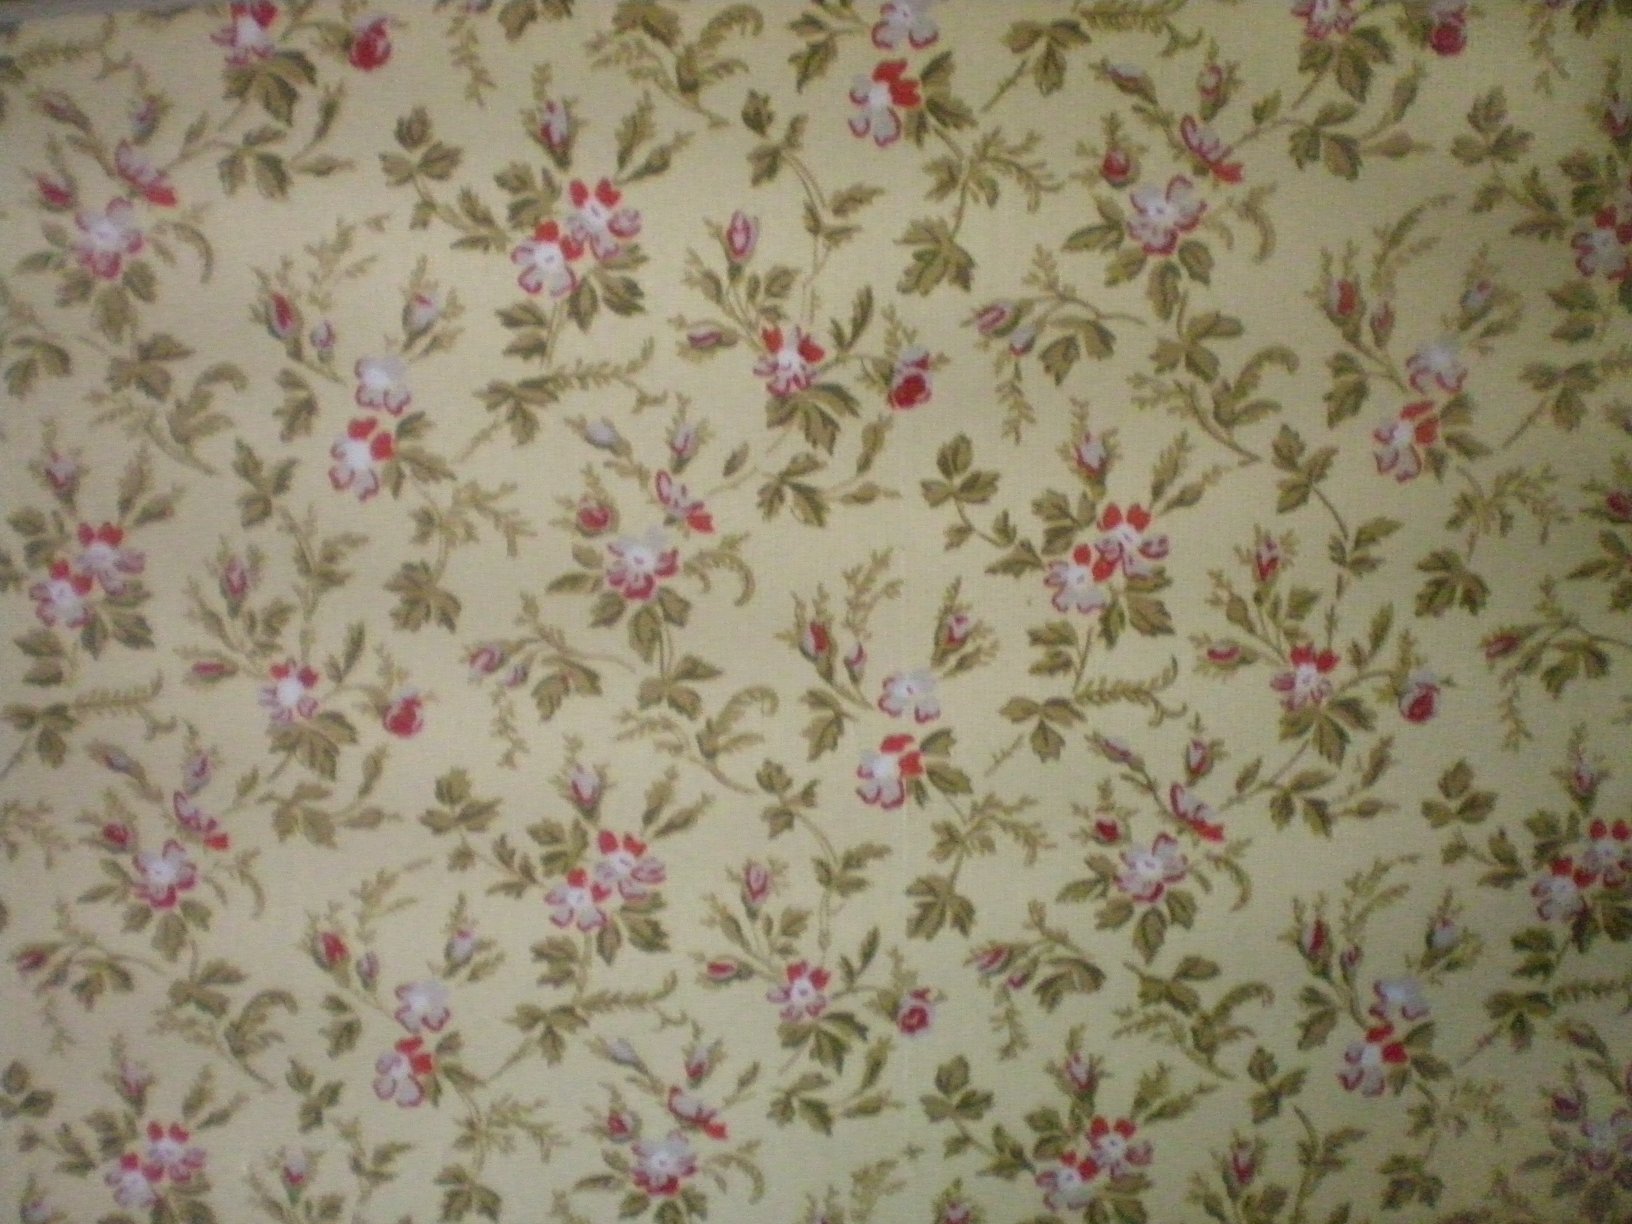 ビクトリア朝様式の壁紙,ピンク,繊維,壁紙,パターン,視覚芸術